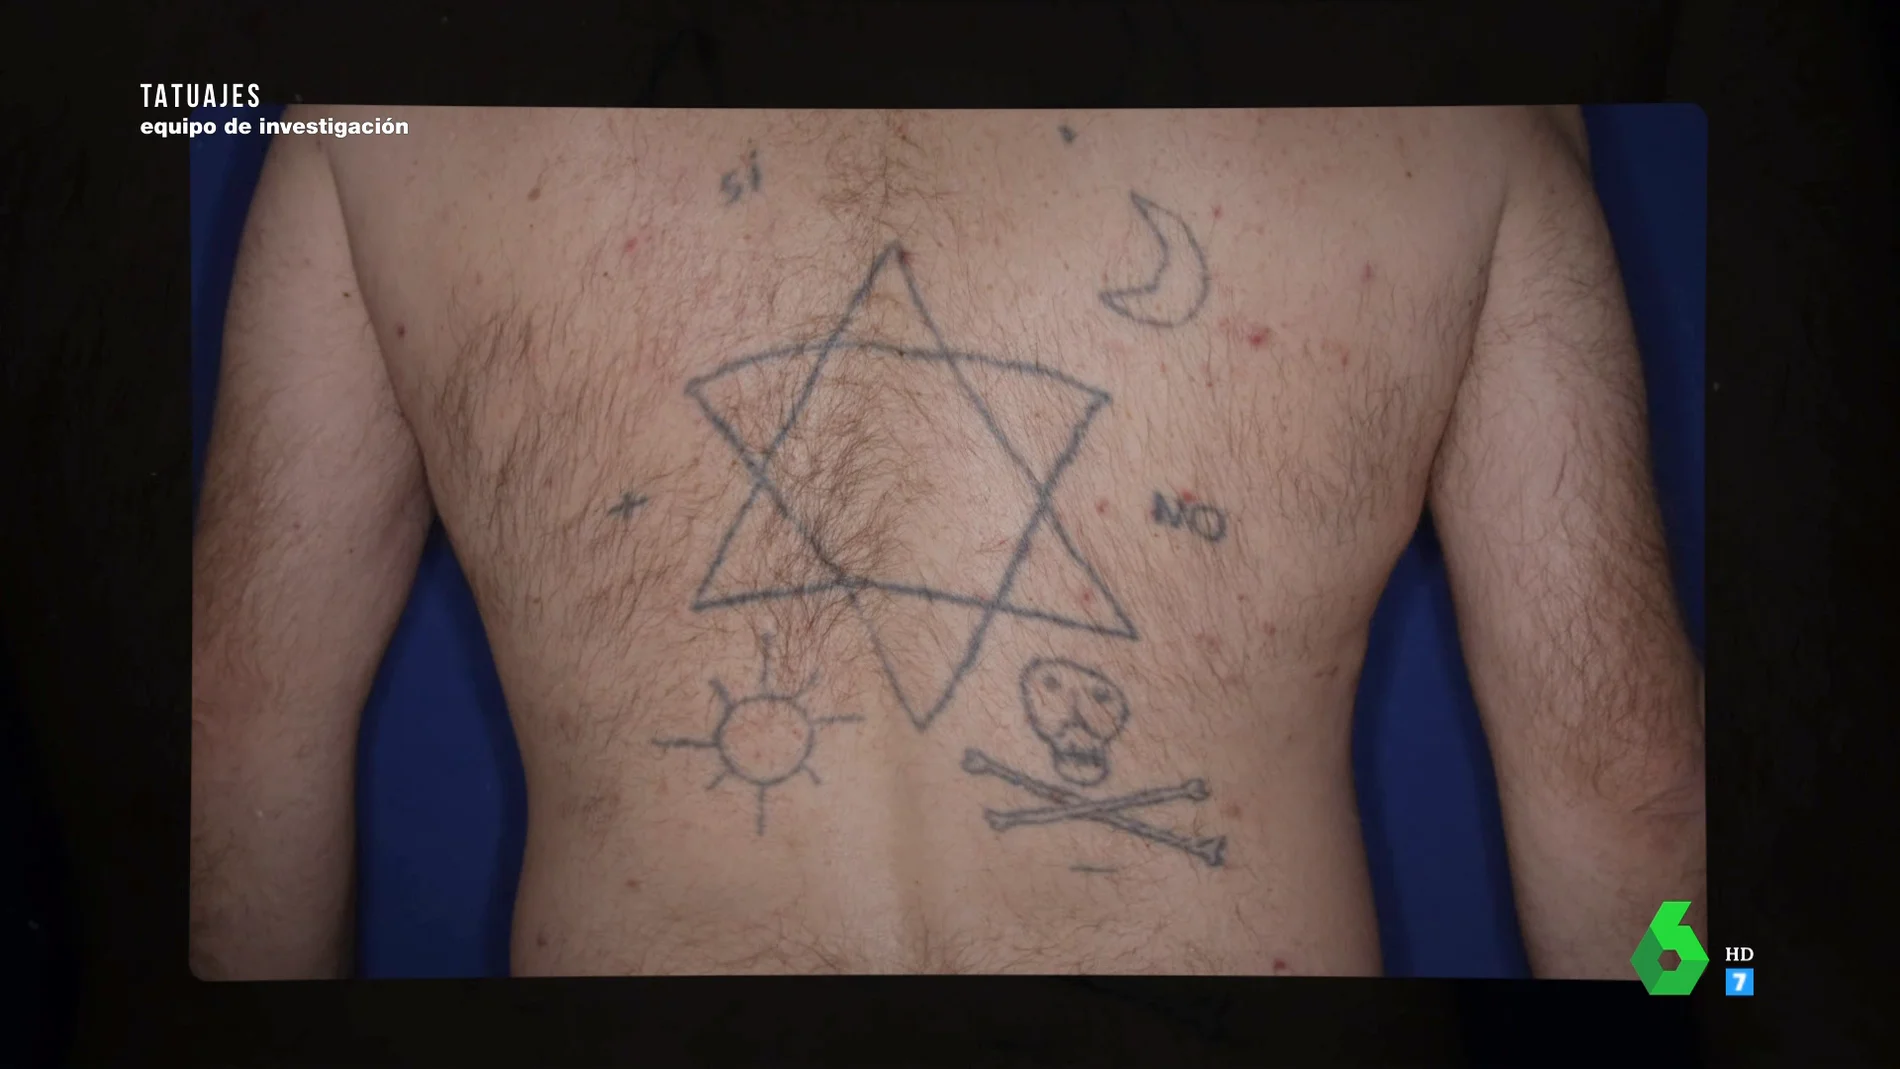 Tatuado por un amigo, en un cementerio, tras una noche de fiesta: el borrado de tatuaje más sorprendente